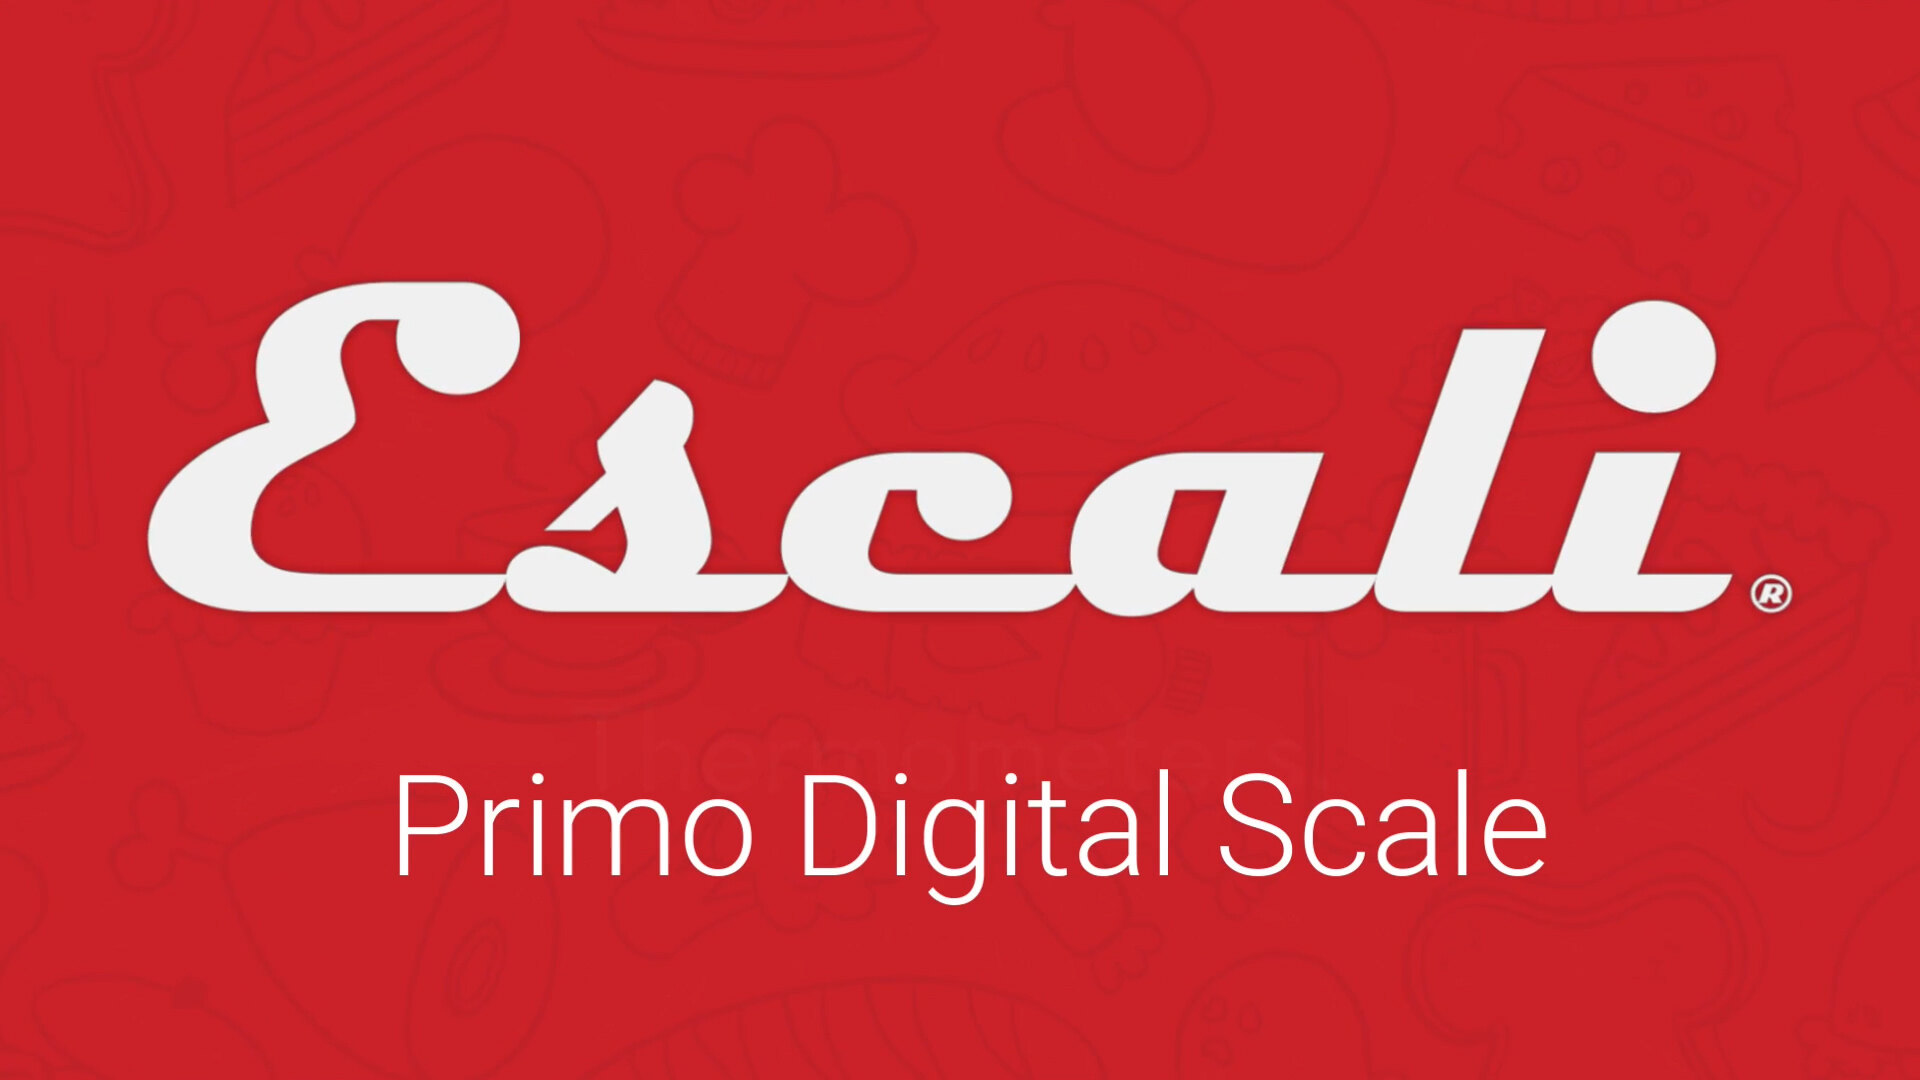 San Jamar Escali Primo Digital Scale Video